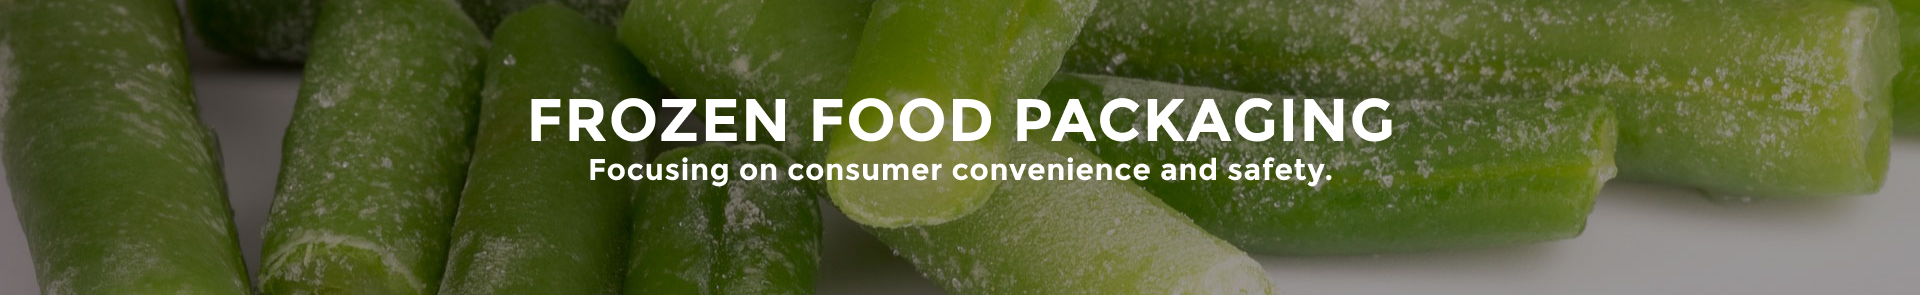 frozen-food-packaging-top-banner